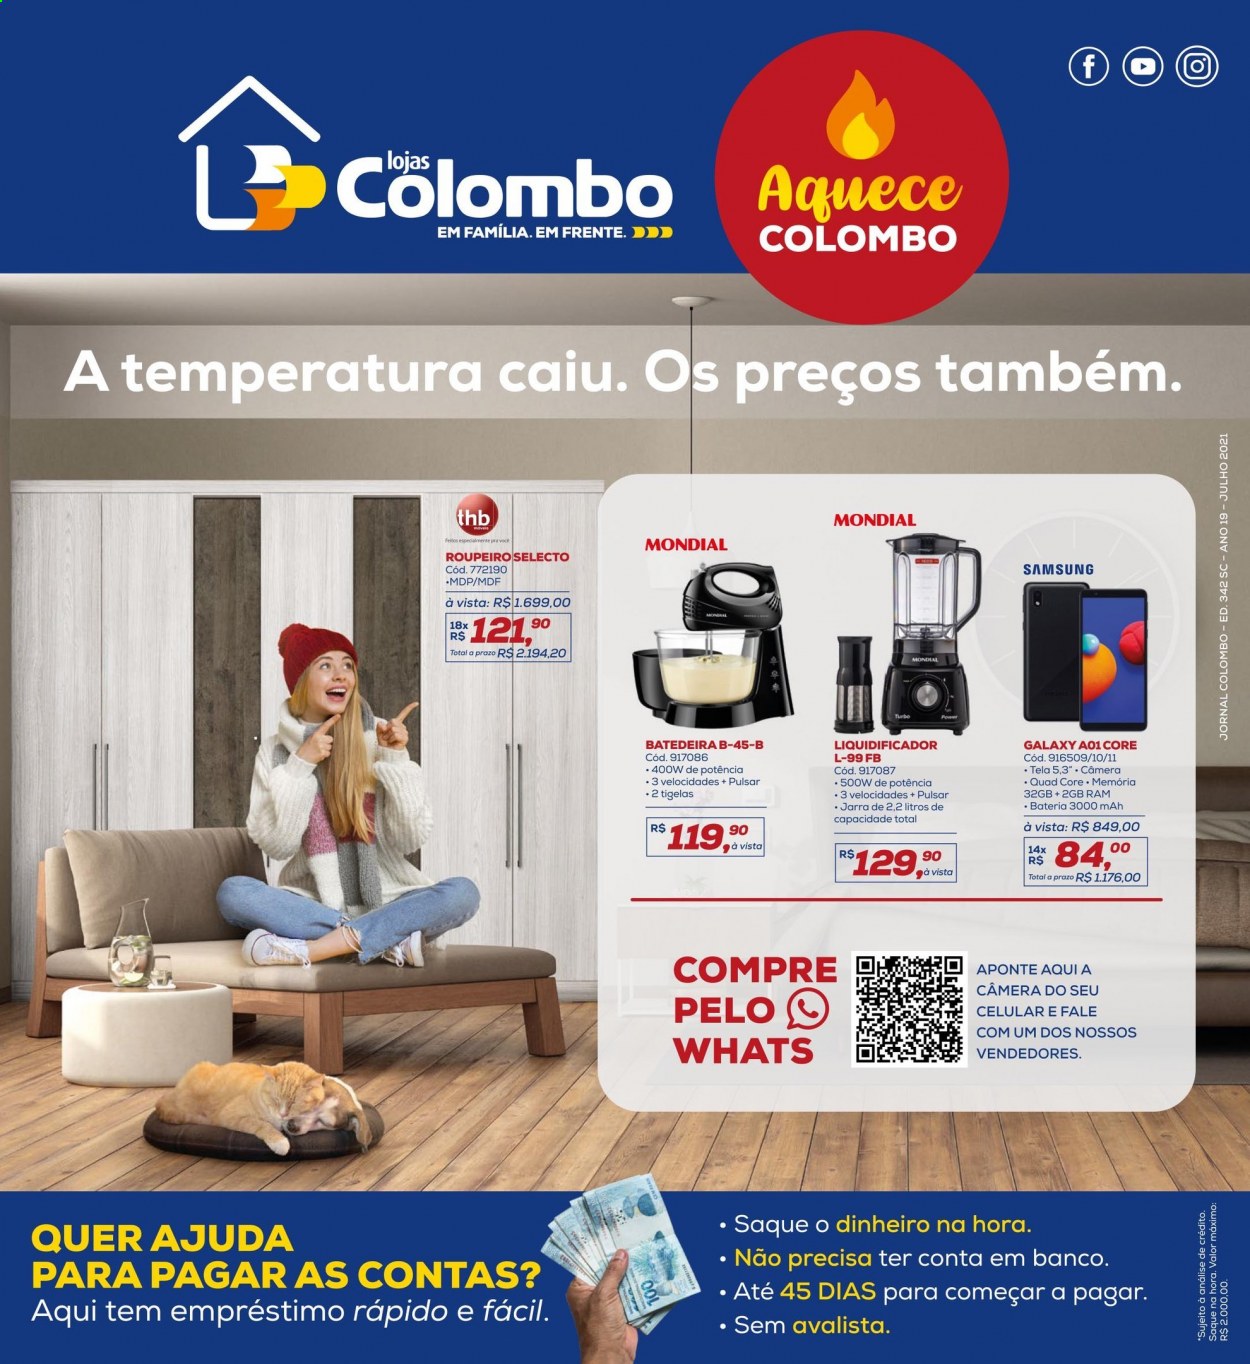 thumbnail - Folheto Lojas Colombo - 01/07/2021 - 31/07/2021 - Produtos em promoção - Samsung, jarra, tigela, bateria, Samsung Galaxy, liquidificador, roupeiro. Página 1.